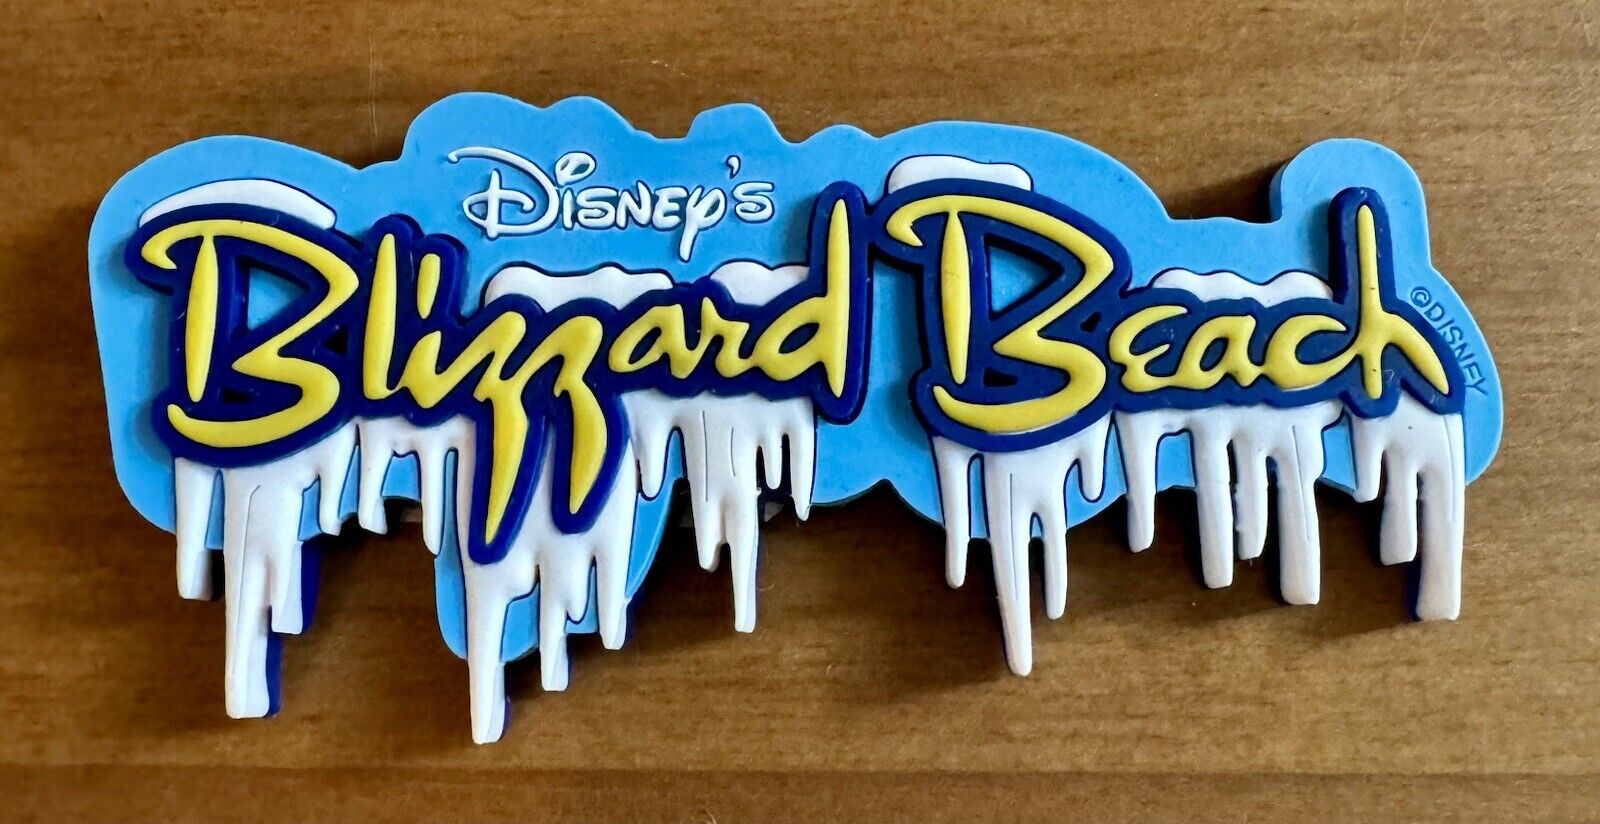 VTG RARE Walt Disney World Blizzard Beach Water Park Snow Rubber Fridge Magnet